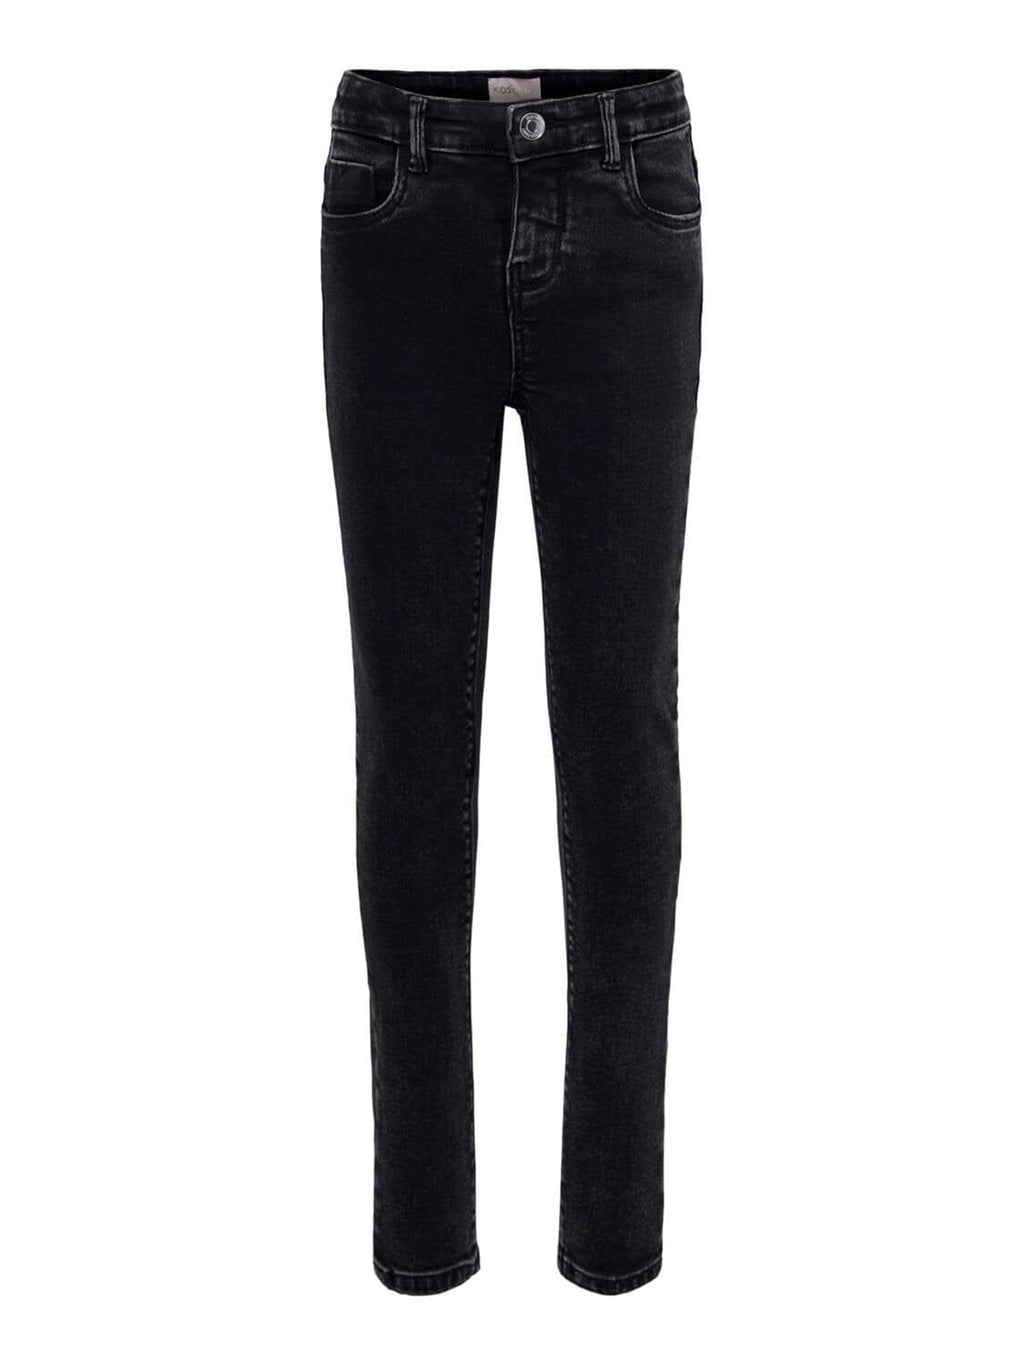 Paola džinsai - juodai pilkos spalvos džinsinis audinys